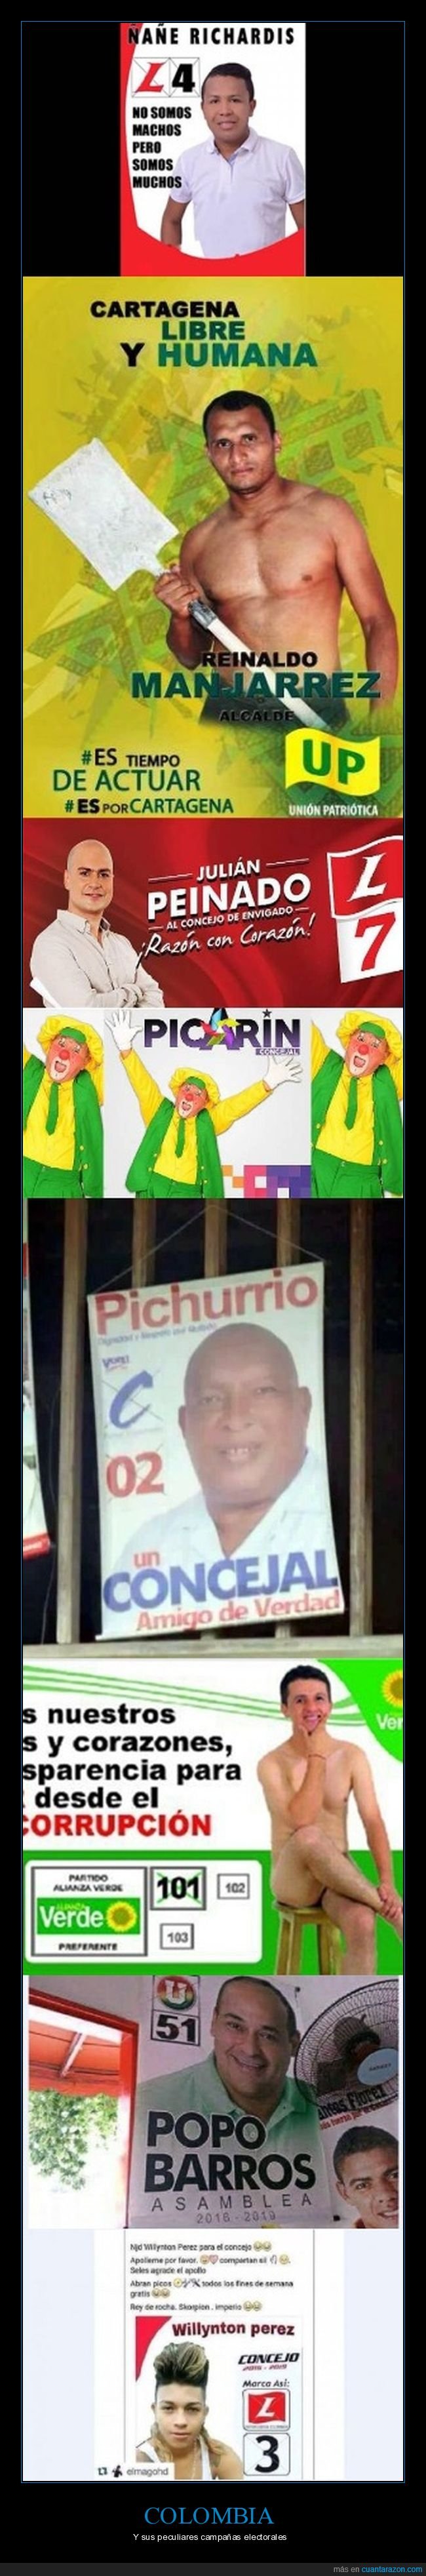 campaña electoral,colombia,elecciones